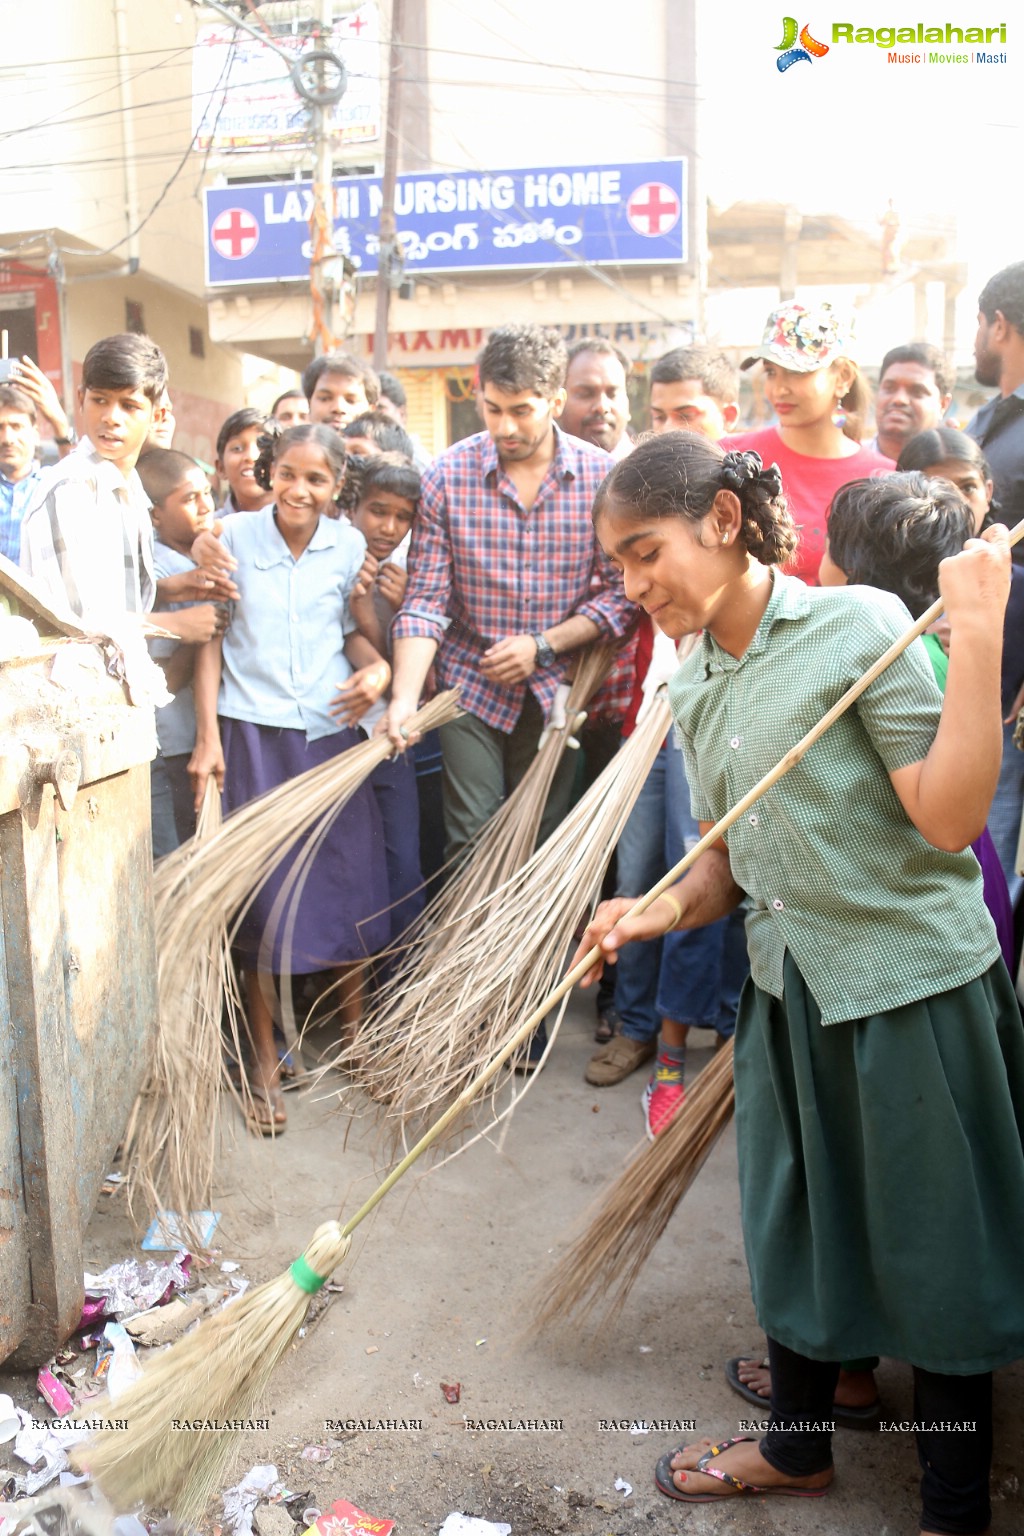 Lakshmi Manchu participated in Swachh Bharat Event